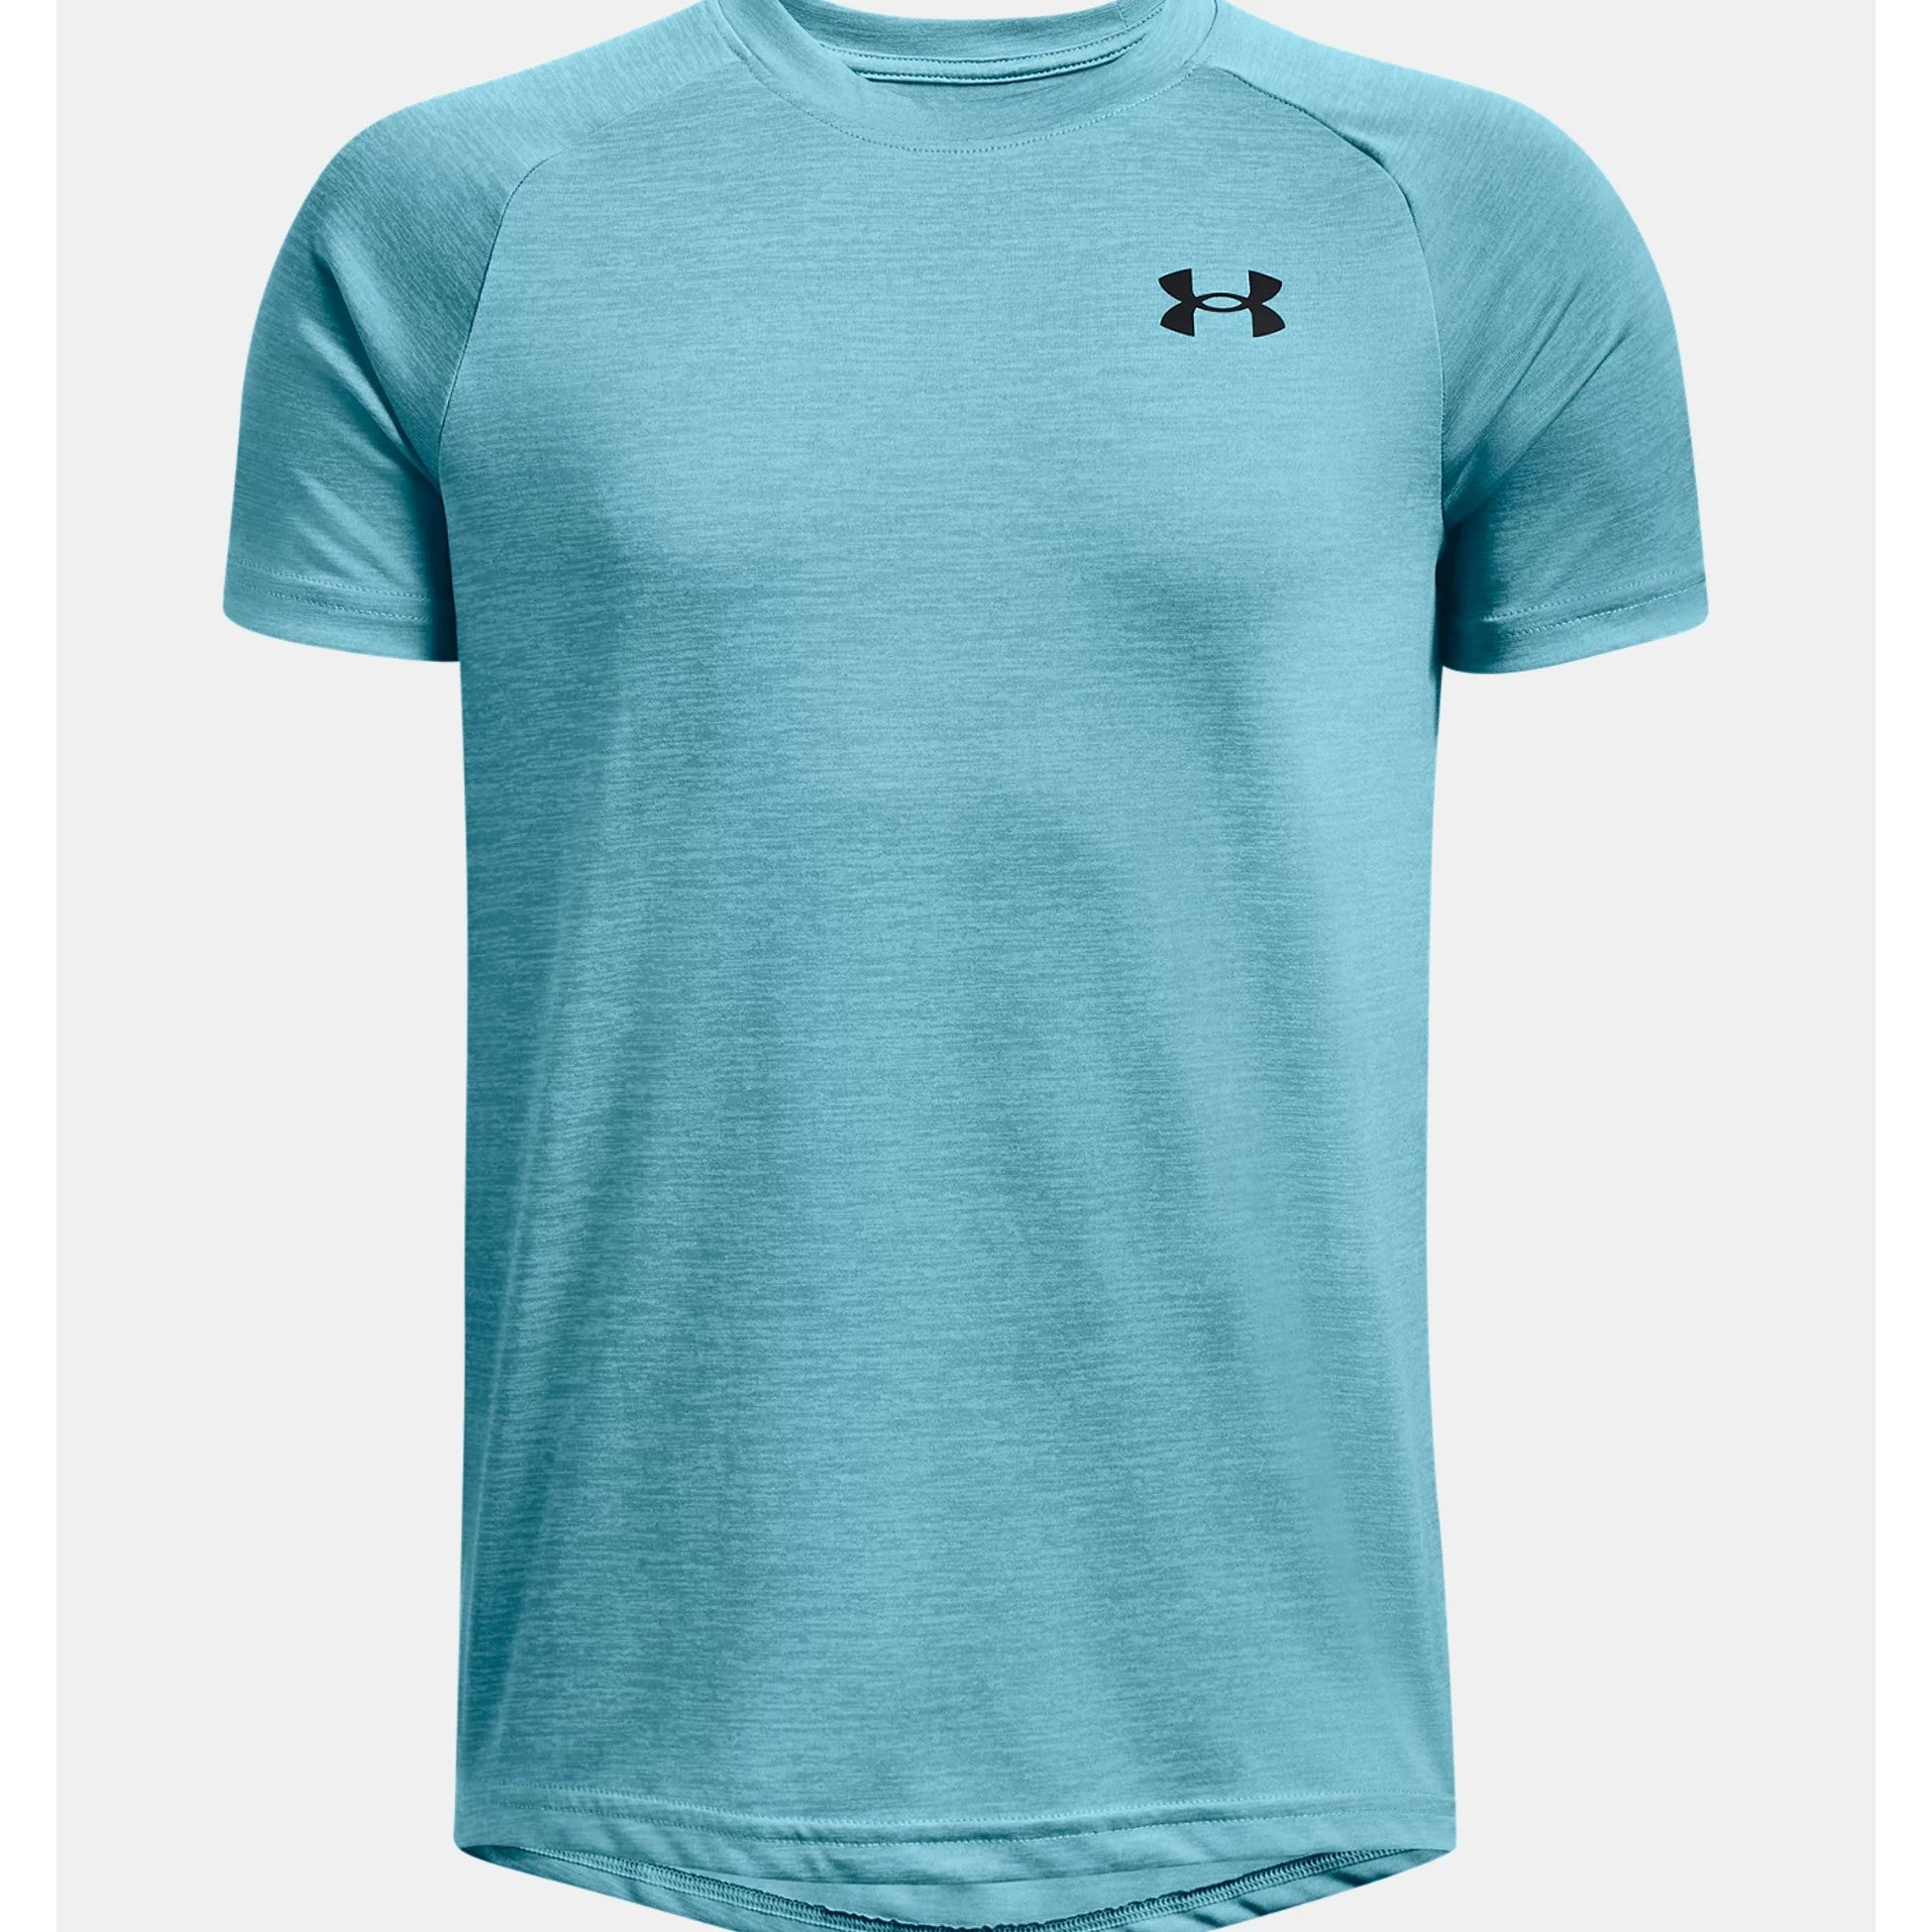 Under Armour Sportstyle T-Shirt, Glacier Blue